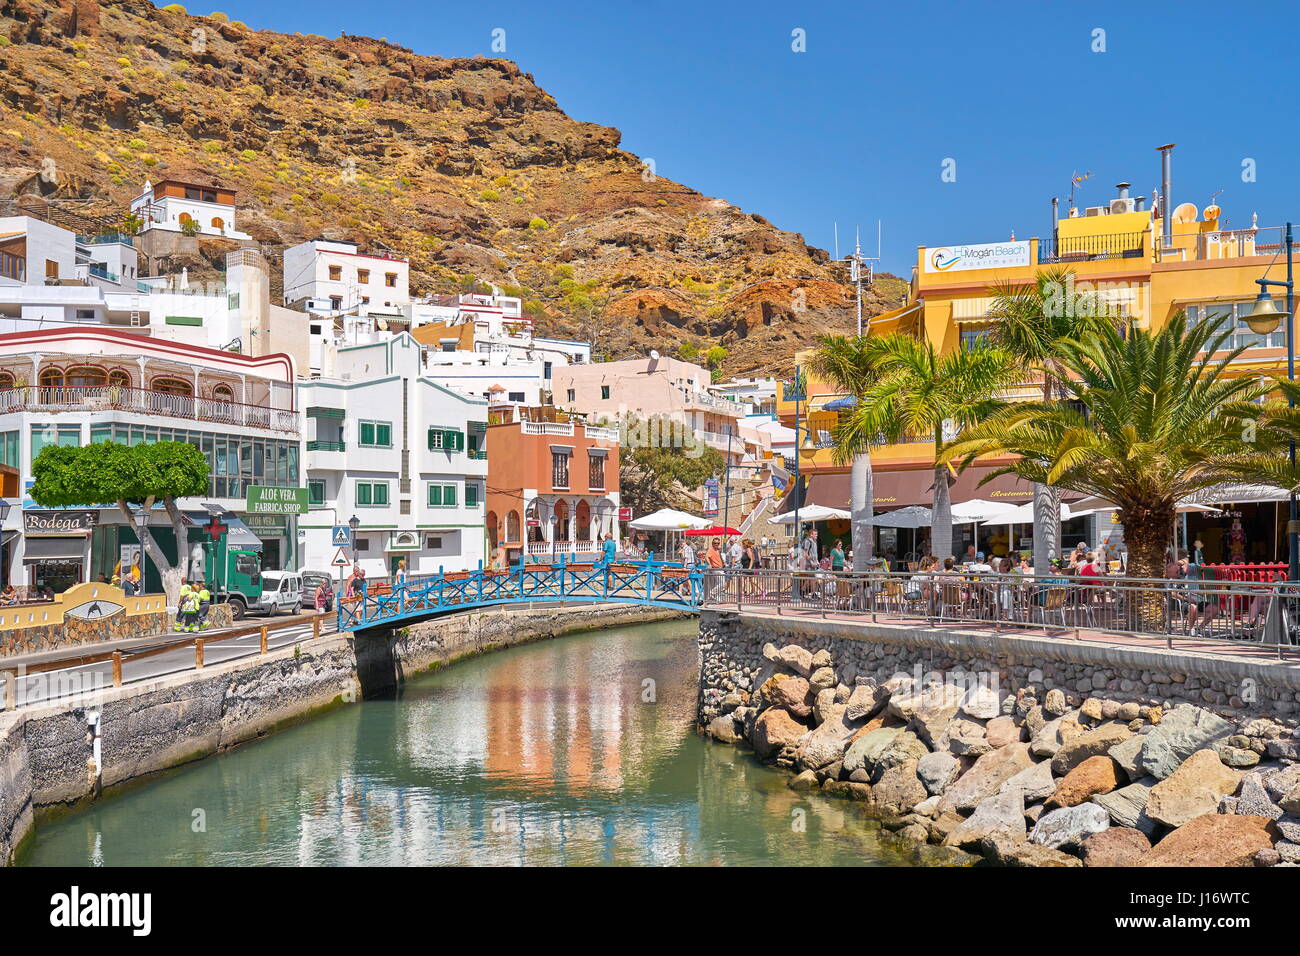 Canary Islands, Gran Canaria, Puerto de Mogan, Spain Stock Photo